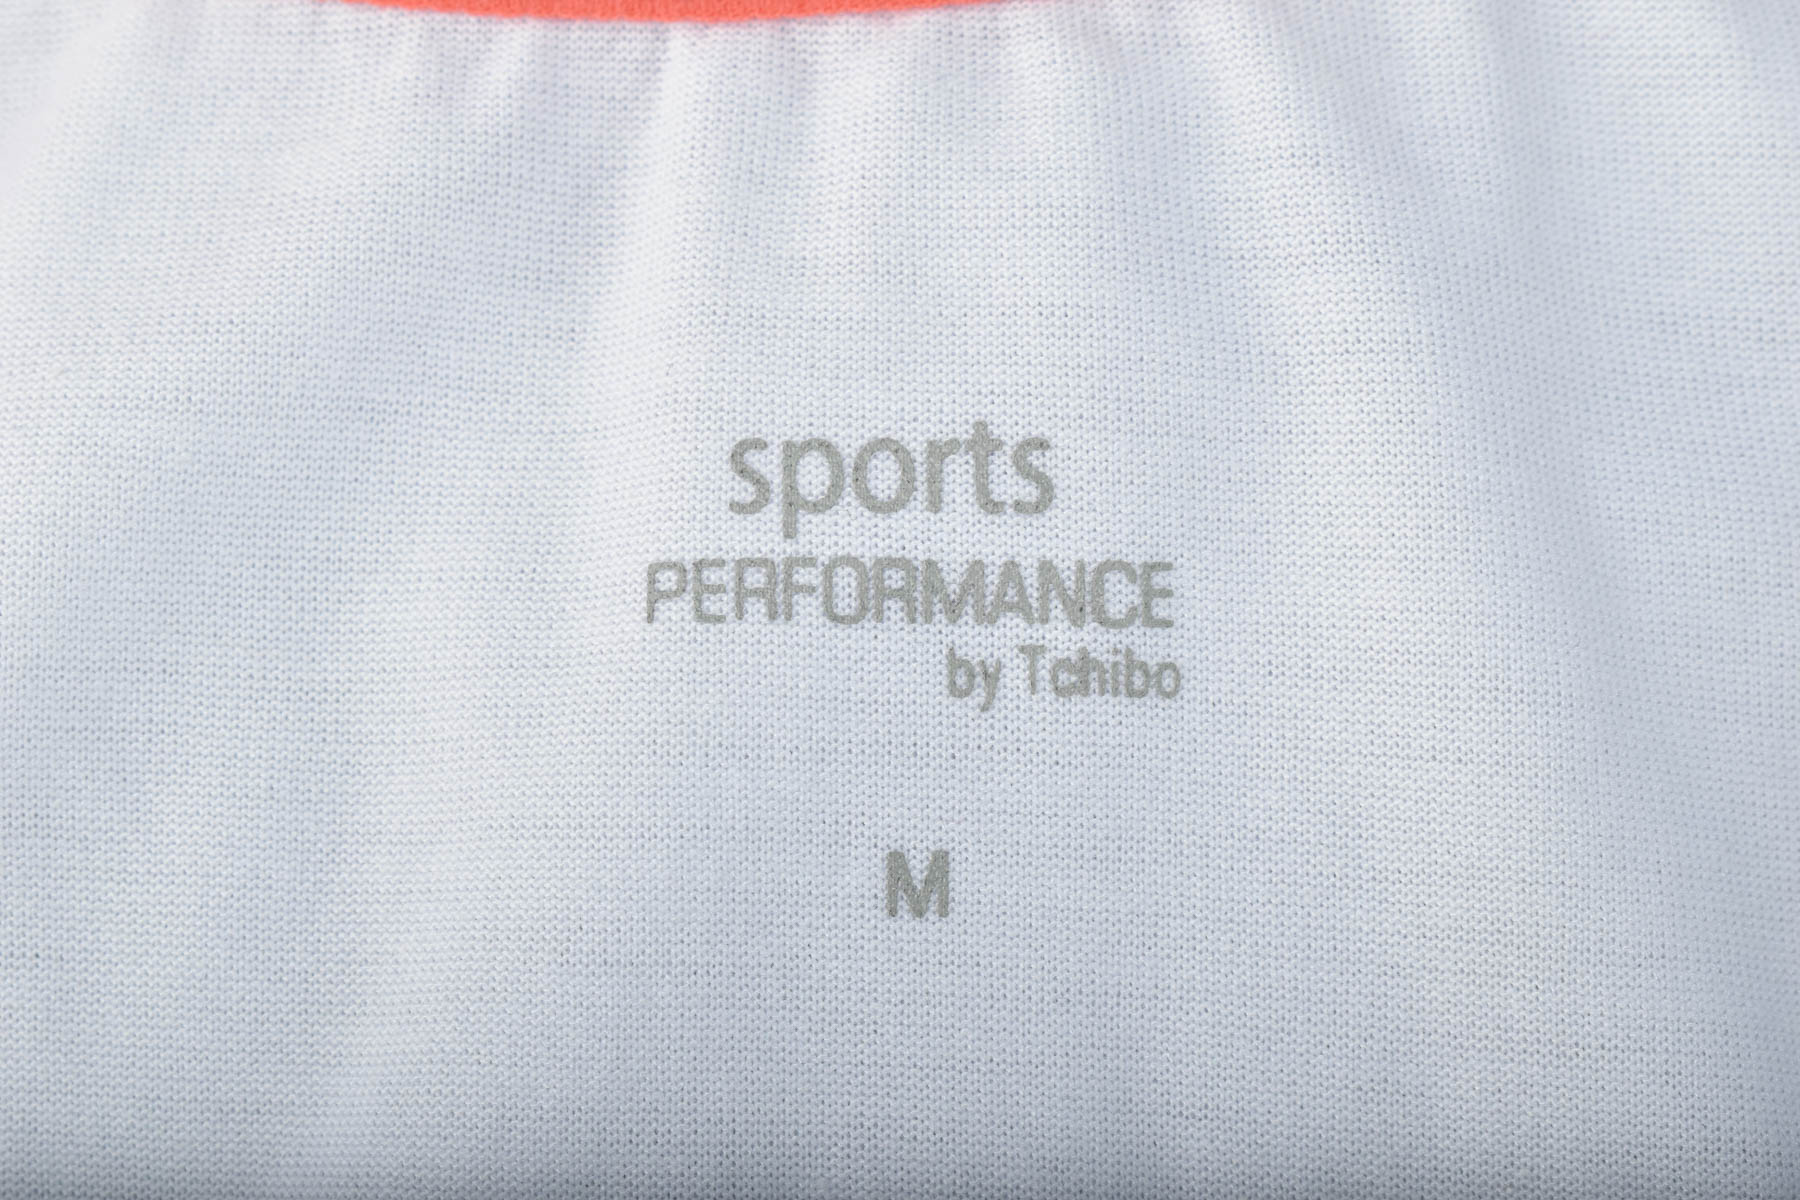 Γυνεκείο τοπ - Sports PERFORMANCE by Tchibo - 2